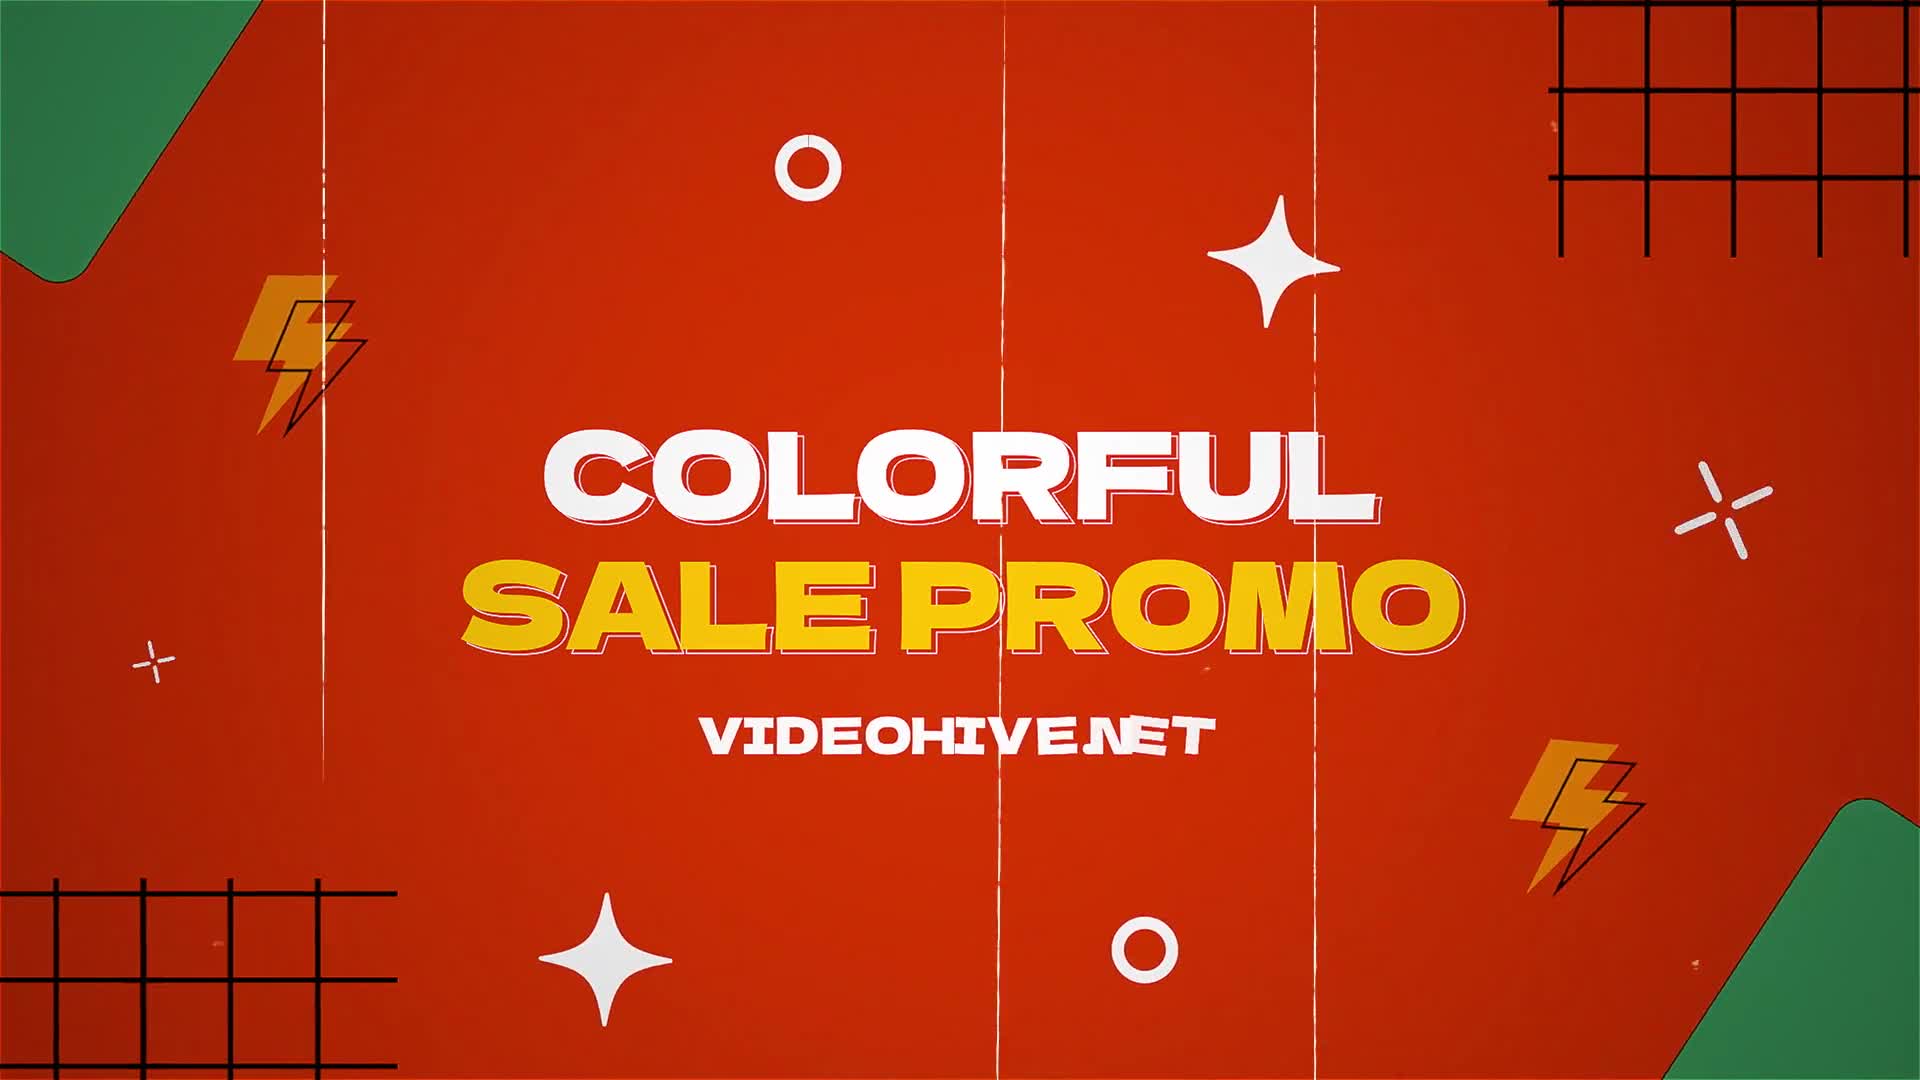 Colorful Sale Promo MOGRT Videohive 38950542 Premiere Pro Image 1